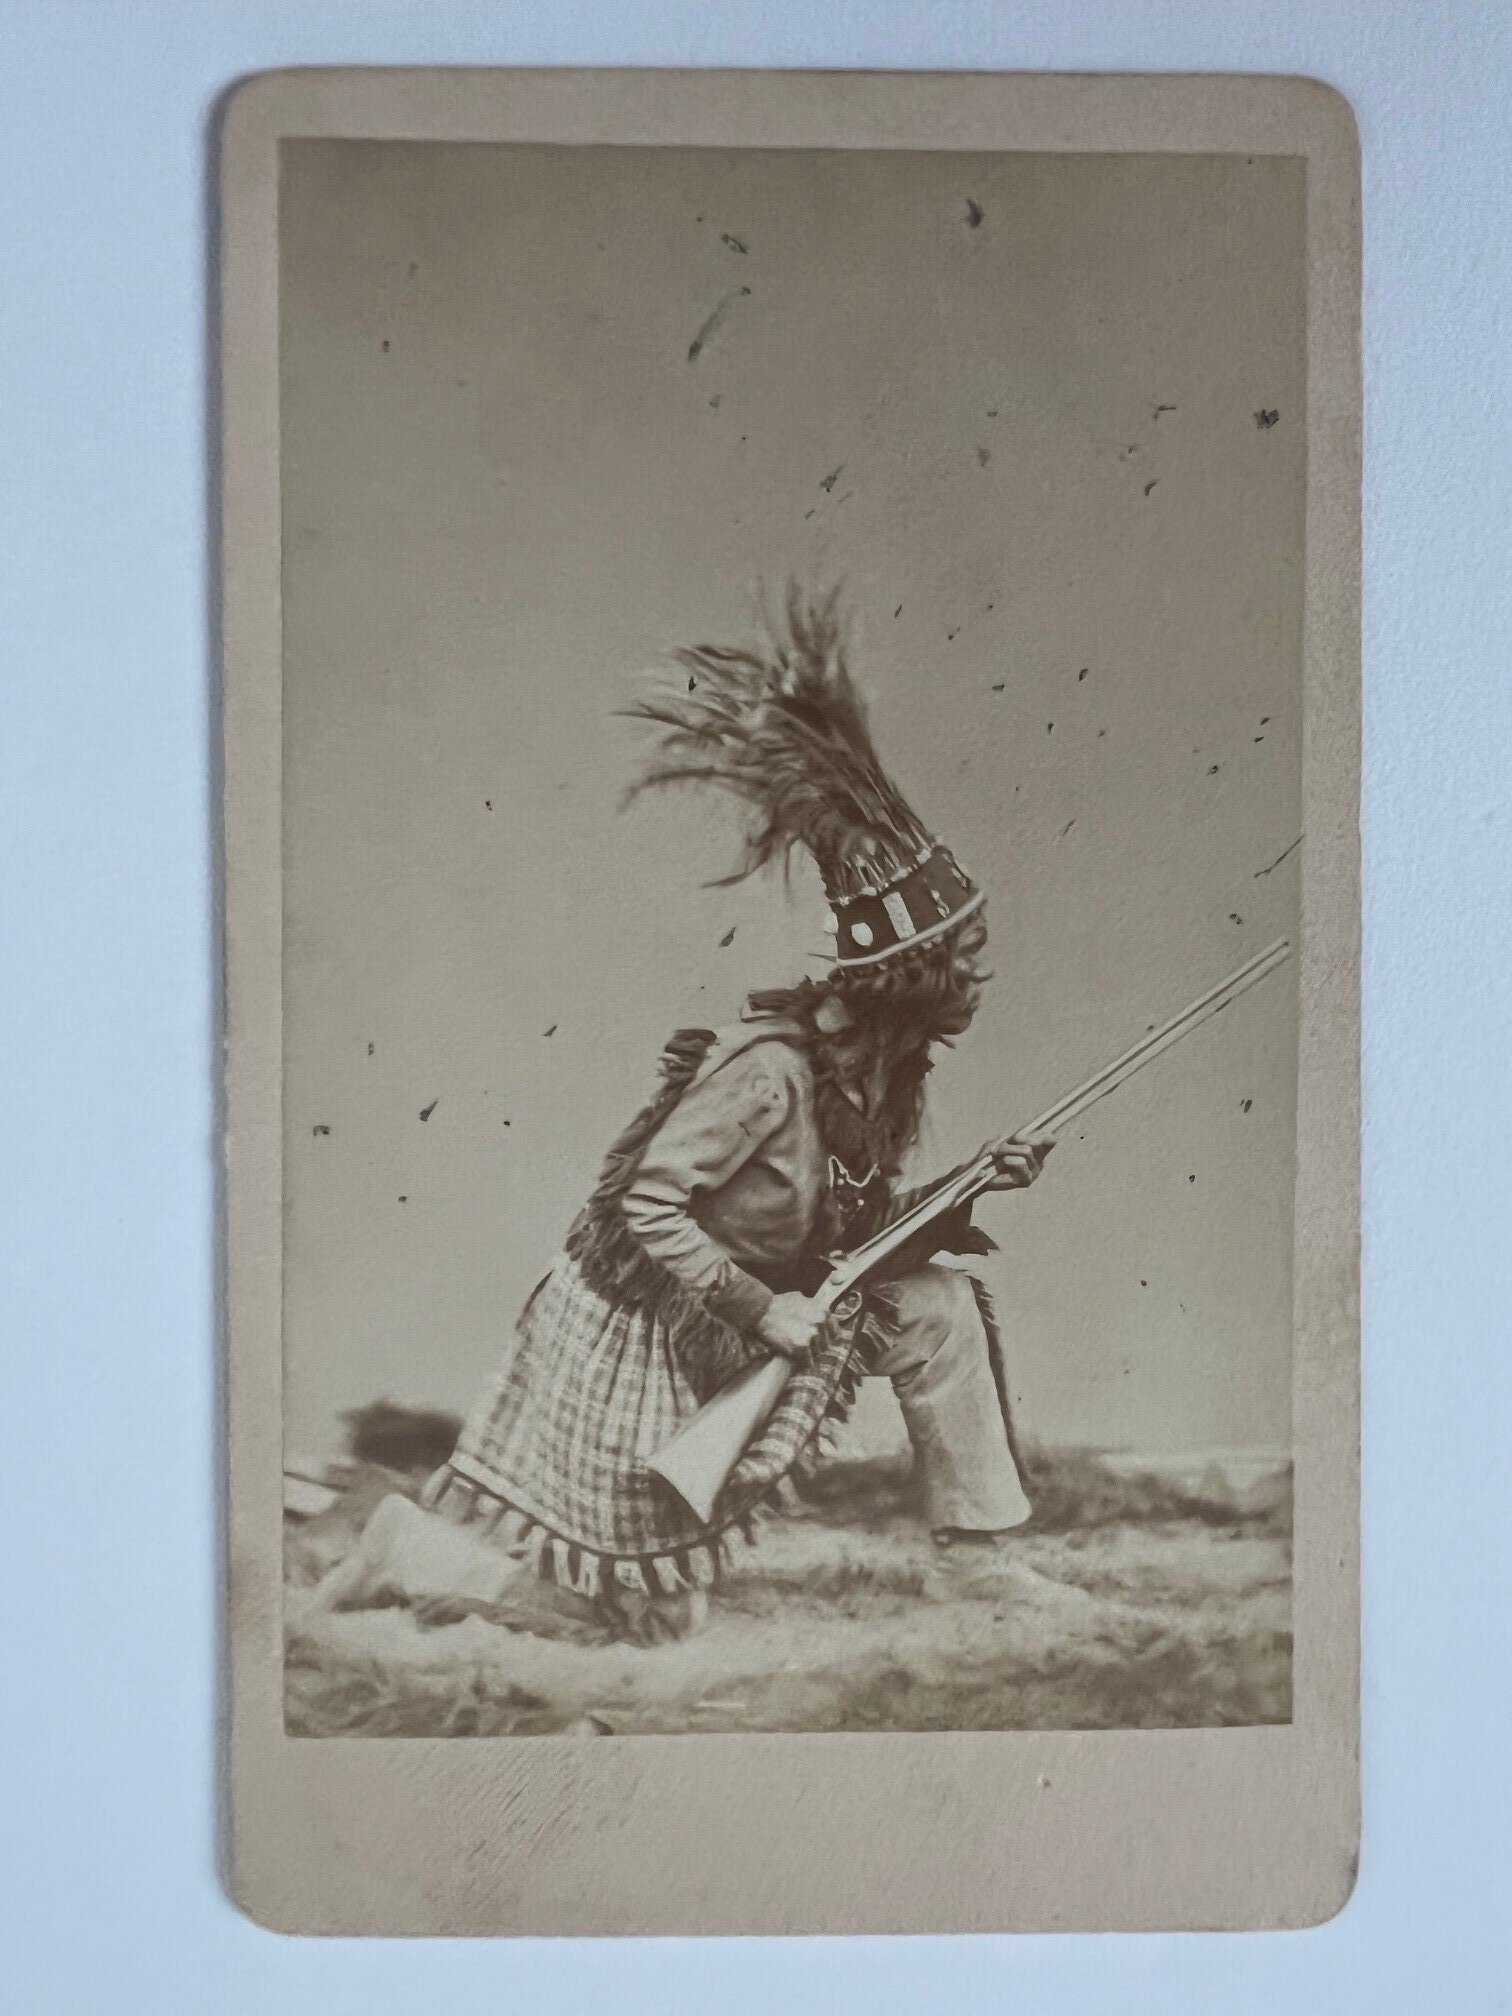 CdV, J. Bamberger, Frankfurt, Indianer, 1879. (Taunus-Rhein-Main - Regionalgeschichtliche Sammlung Dr. Stefan Naas CC BY-NC-SA)